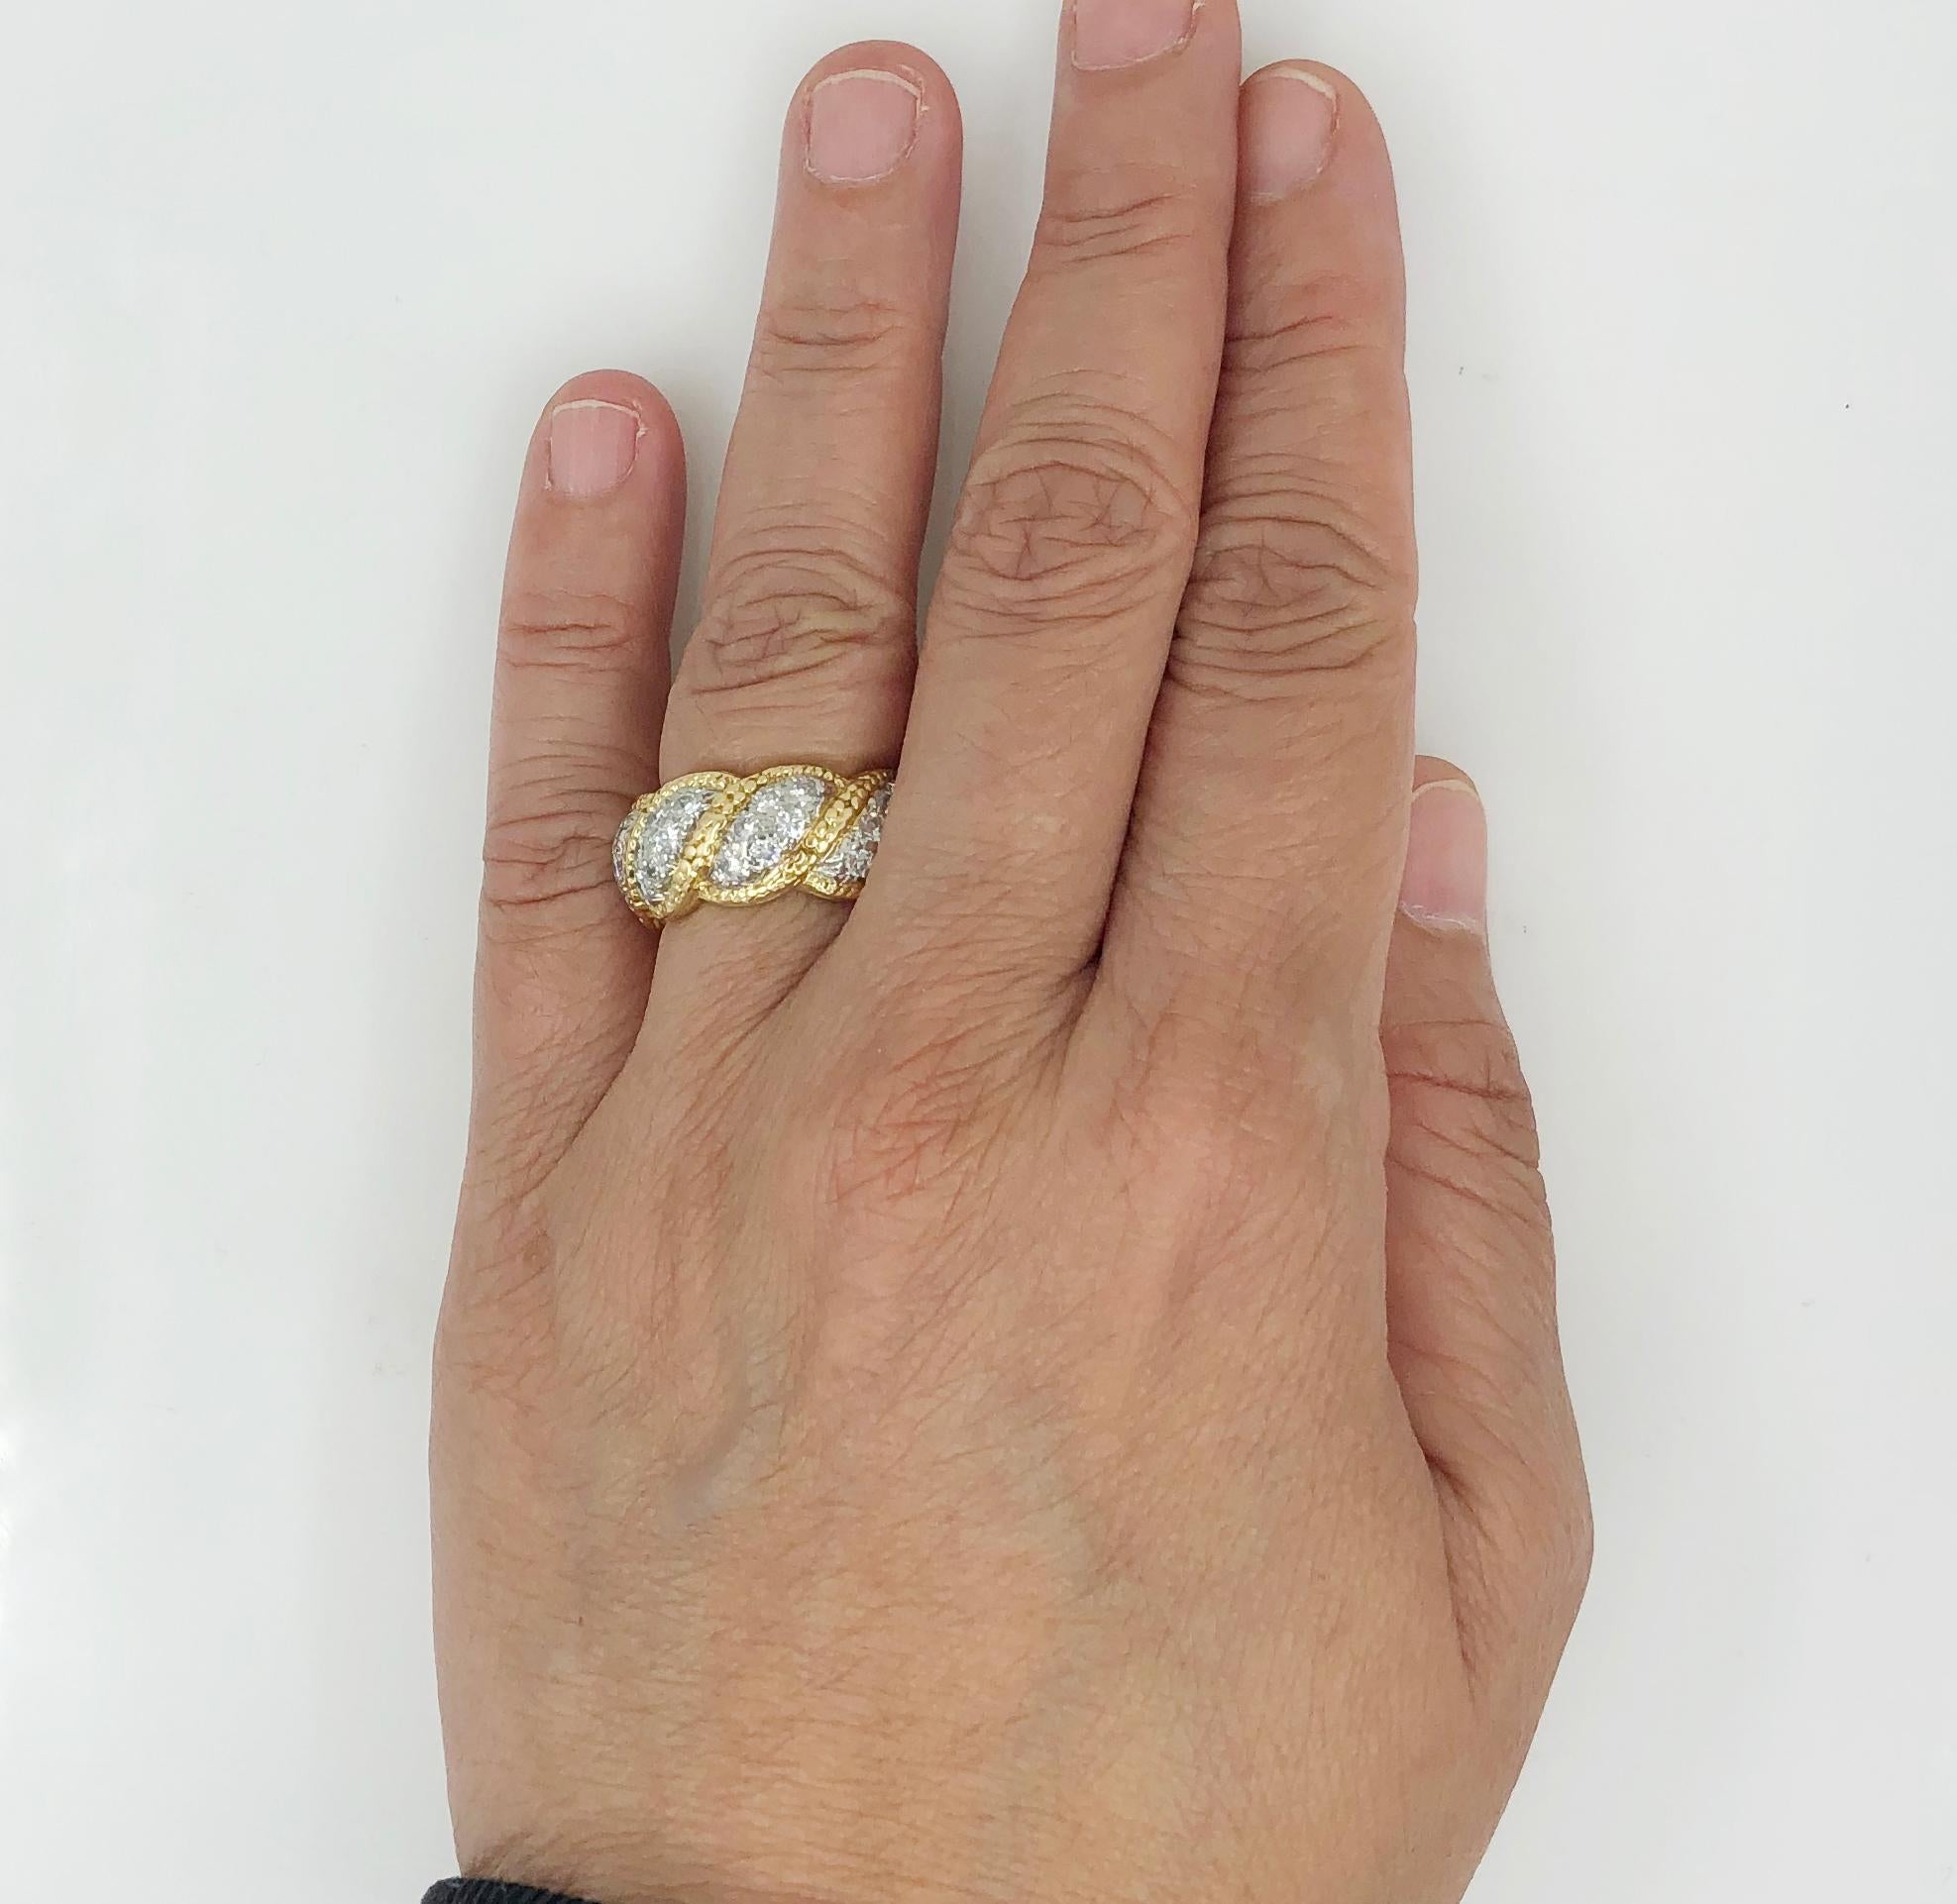 TIFFANY & Co. Schlumberger Studio Diamantring.
Ehering aus 18 Karat Gelbgold und Platin, besetzt mit runden Diamanten im Brillantschliff, Tiffany & Co.
Ringgröße 6,25 und 0,25″ breit
Signiert 